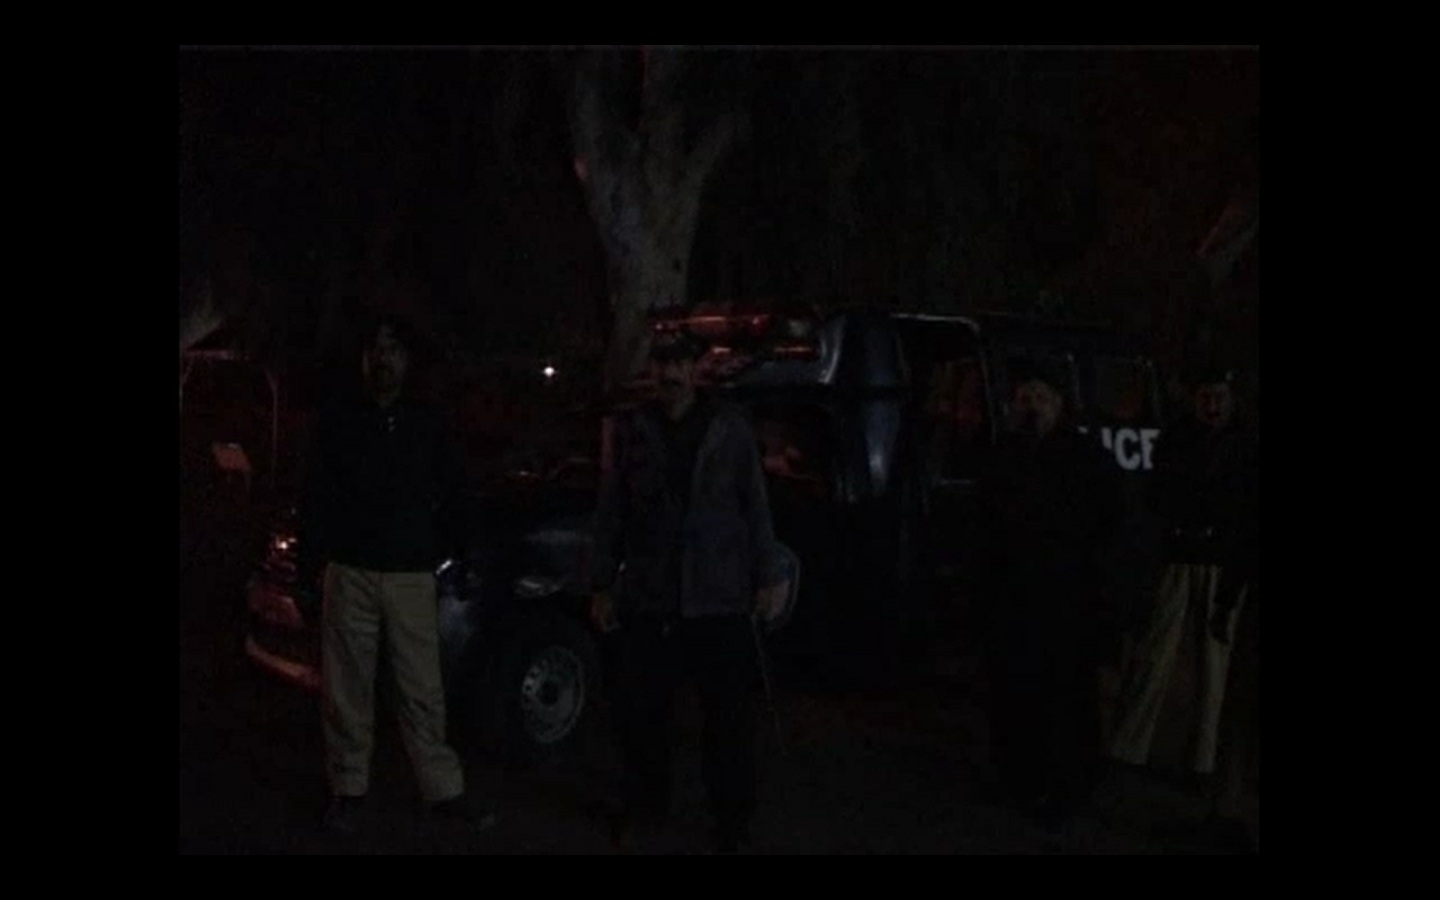 کشمور: سکیورٹی اہلکاروں کا ناکے پر باراتیوں کی بس کو رکنے کا اشارہ، نہ رکنے پر فائرنگ، 3افراد زخمی